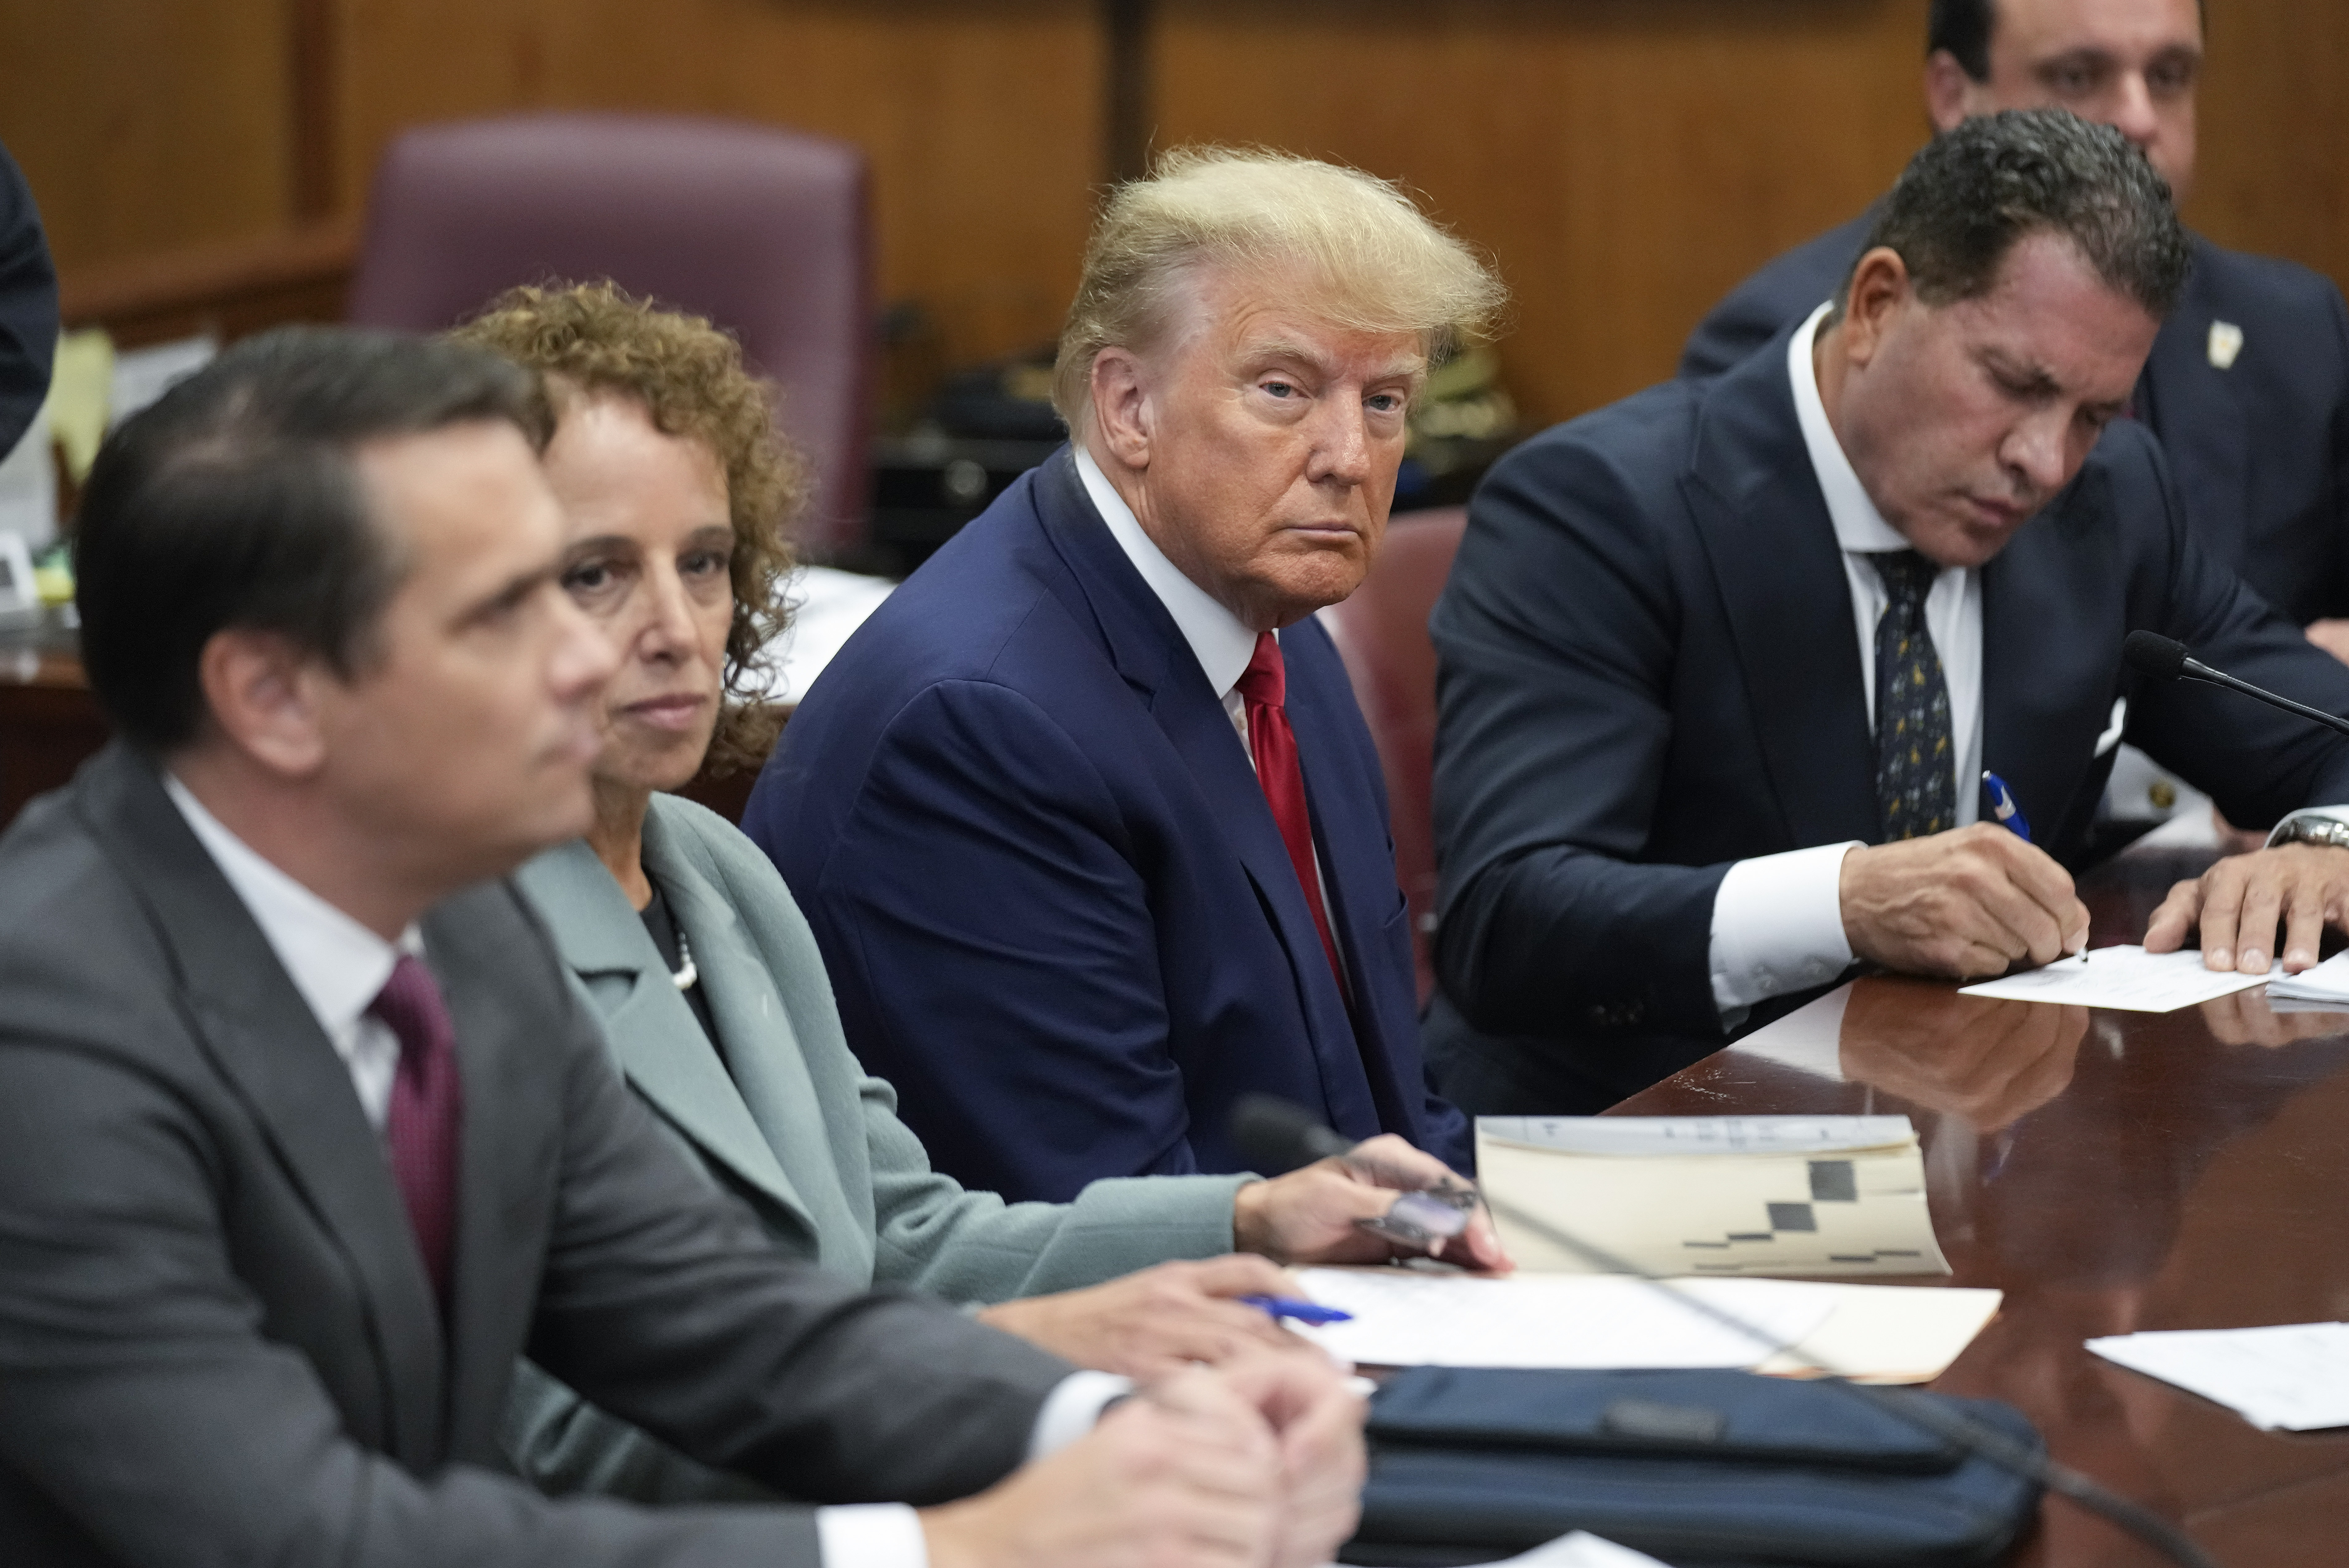 El ex presidente Donald Trump, sentado junto a su equipo de abogados en una sala del tribunal de Manhattan (AP Photo/Seth Wenig)